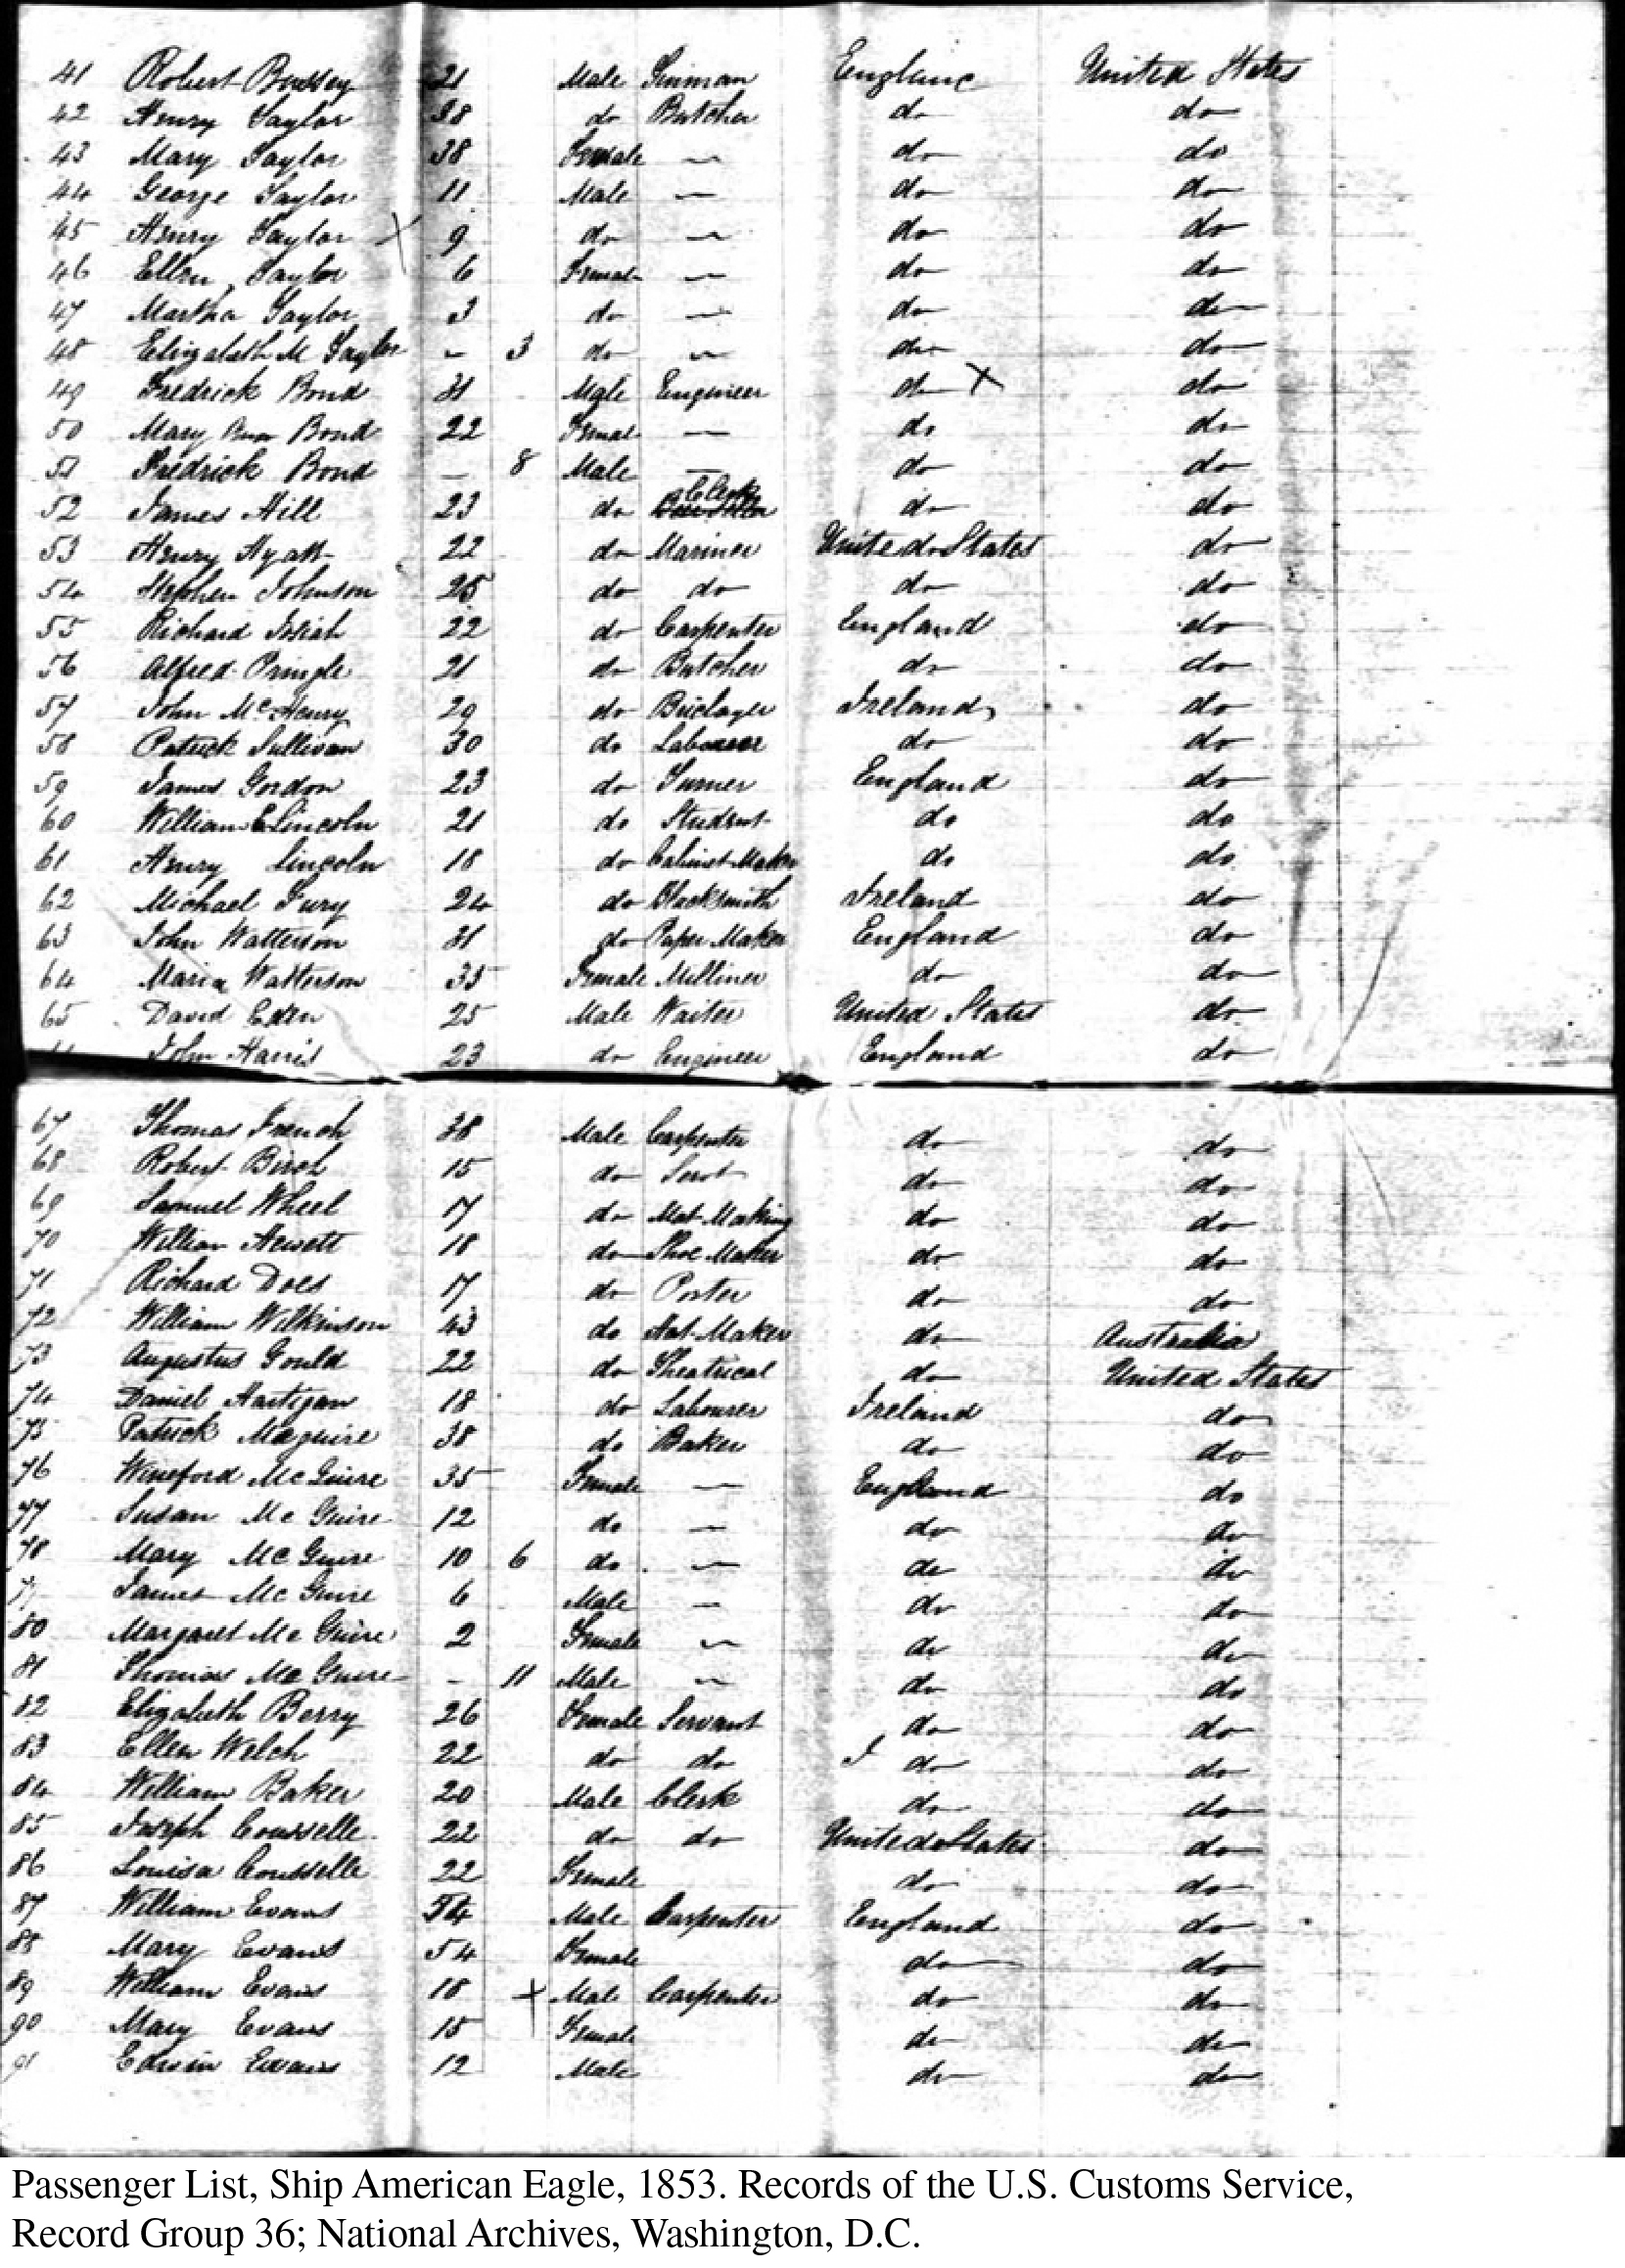 Ship’s Passenger List, American Eagle, 1853